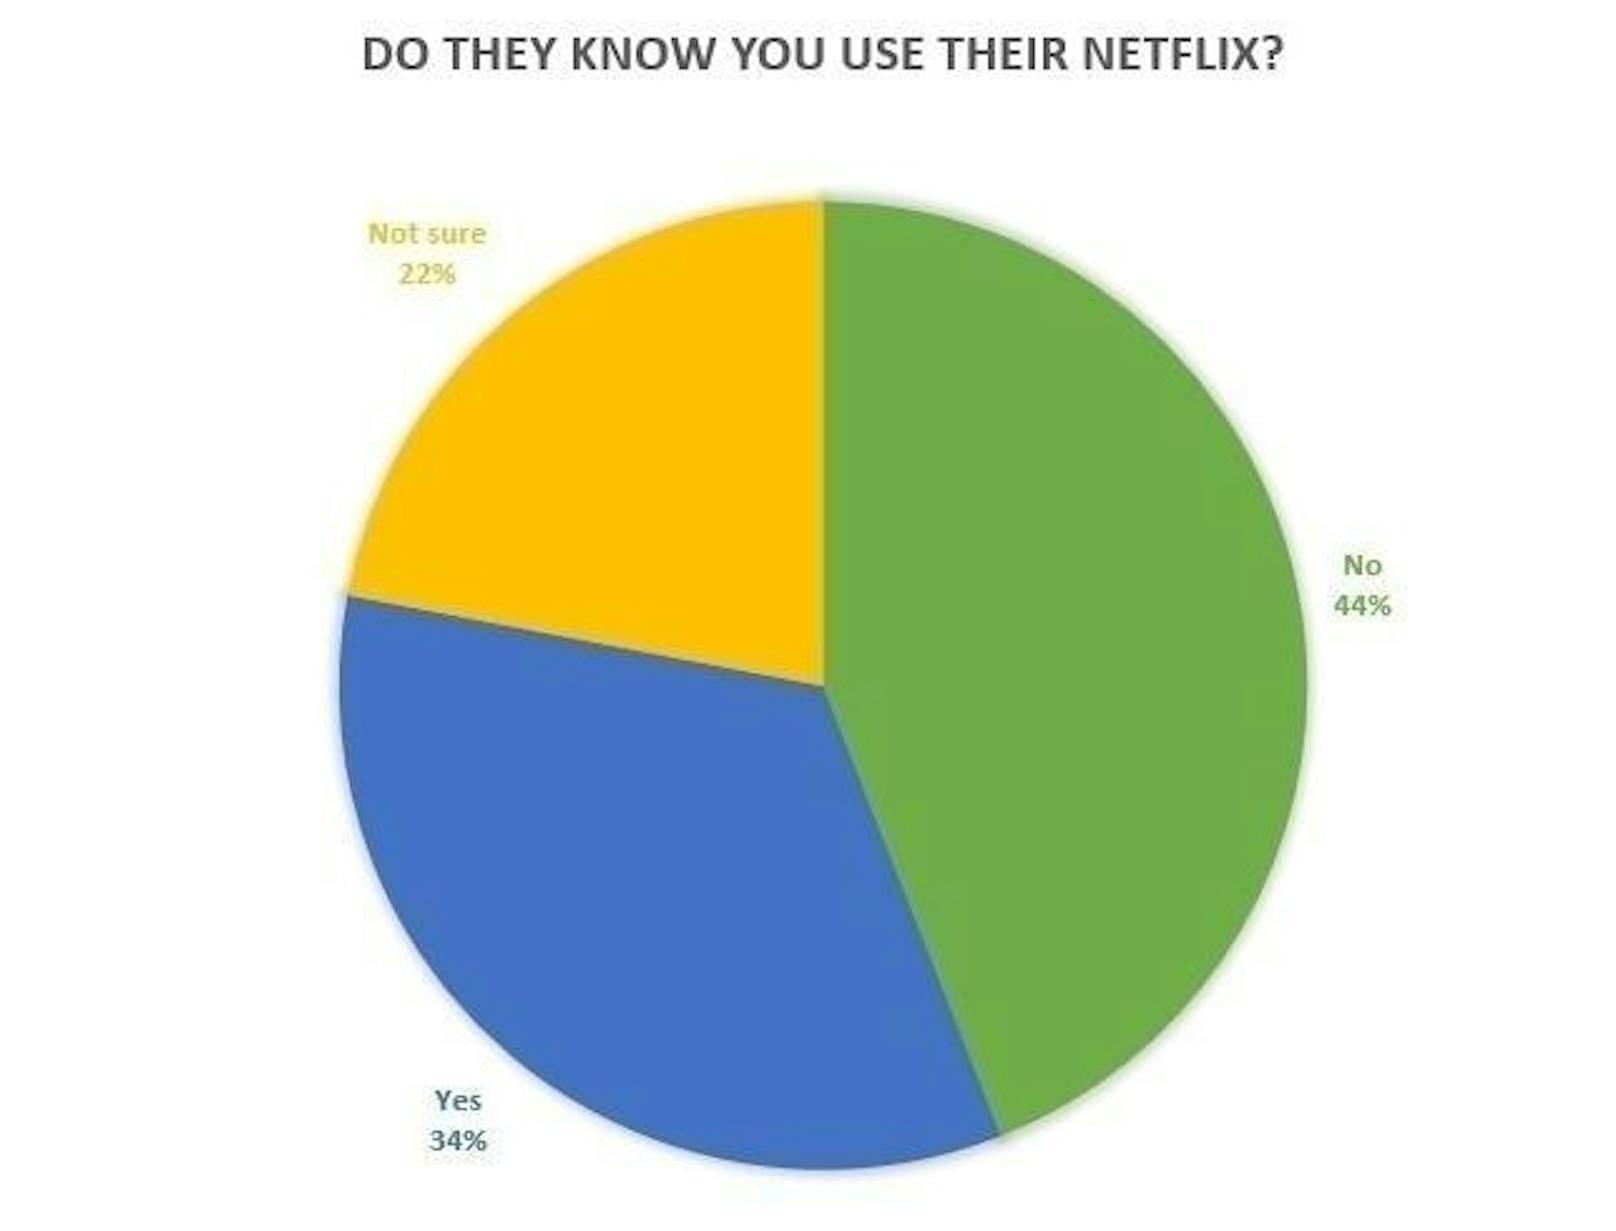 44 Prozent der Teilnehmer einer Umfrage der Website Exstreamist.com gaben an, dass der Kontoinhaber gar nichts vom Sharing weiß.